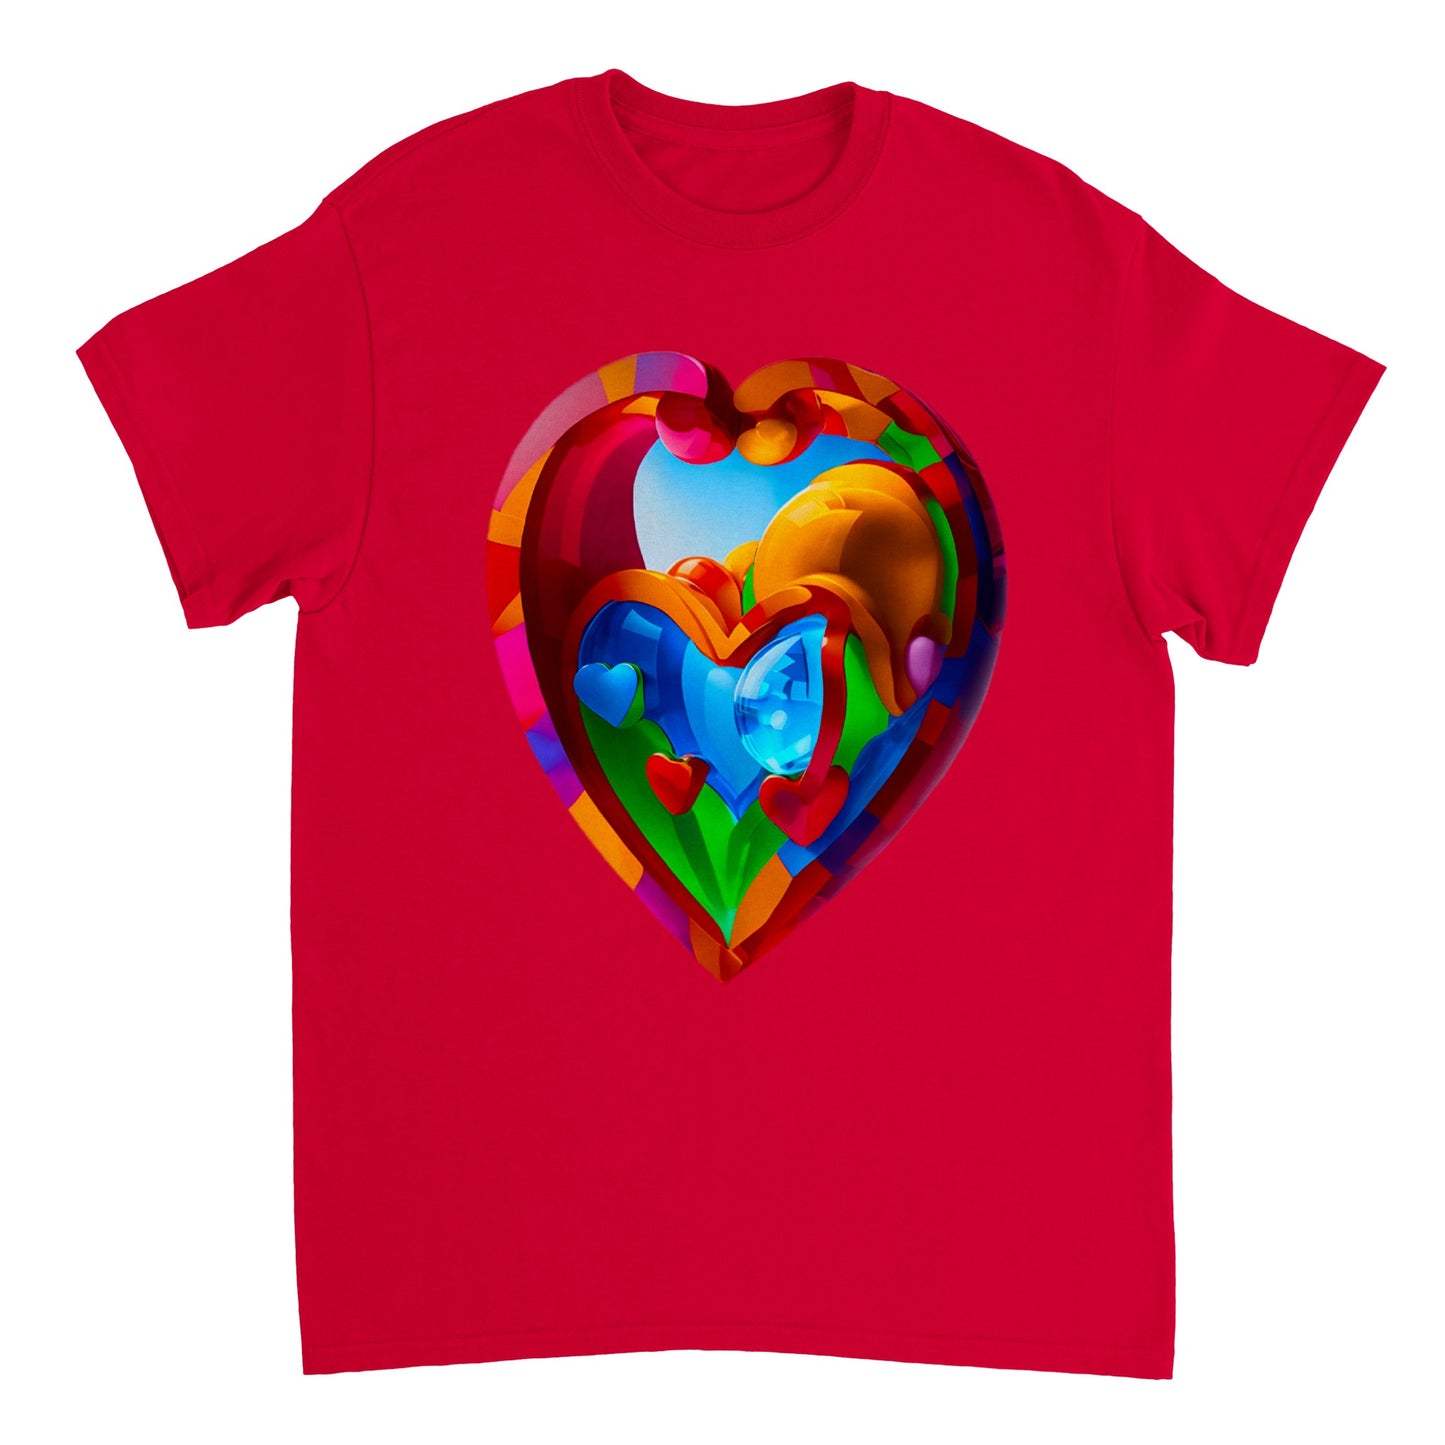 Love Heart - Heavyweight Unisex Crewneck T-shirt 33